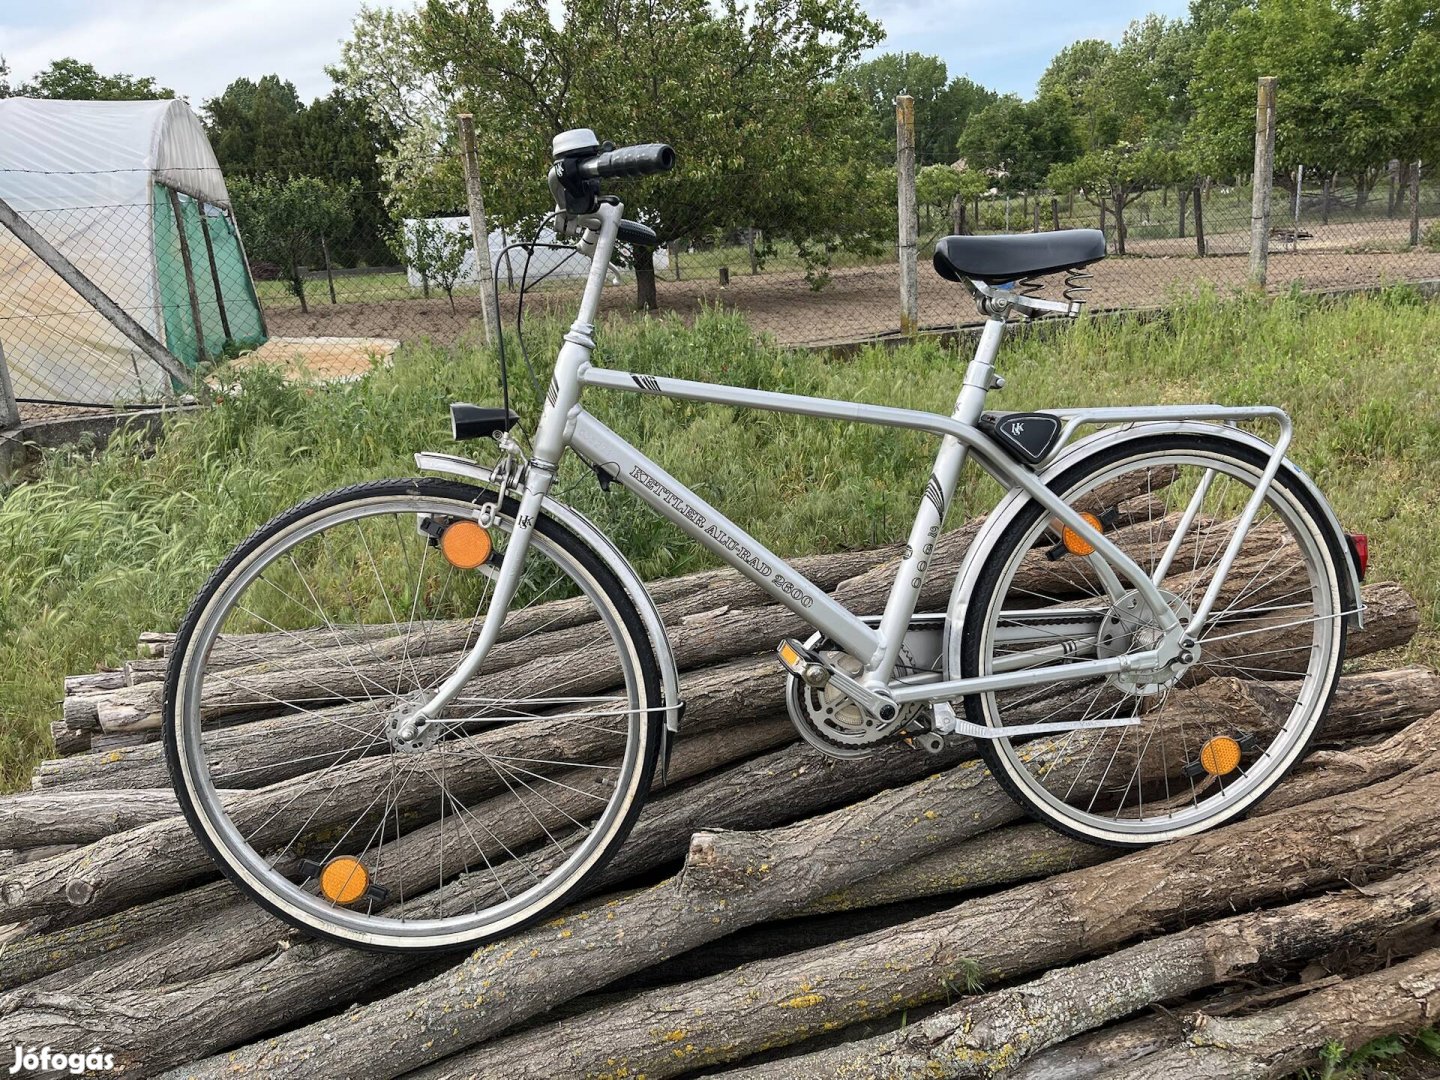 Kettler Alu-Rad 2600 alumínium férfi bicikli kerékpár agyváltós 26-os